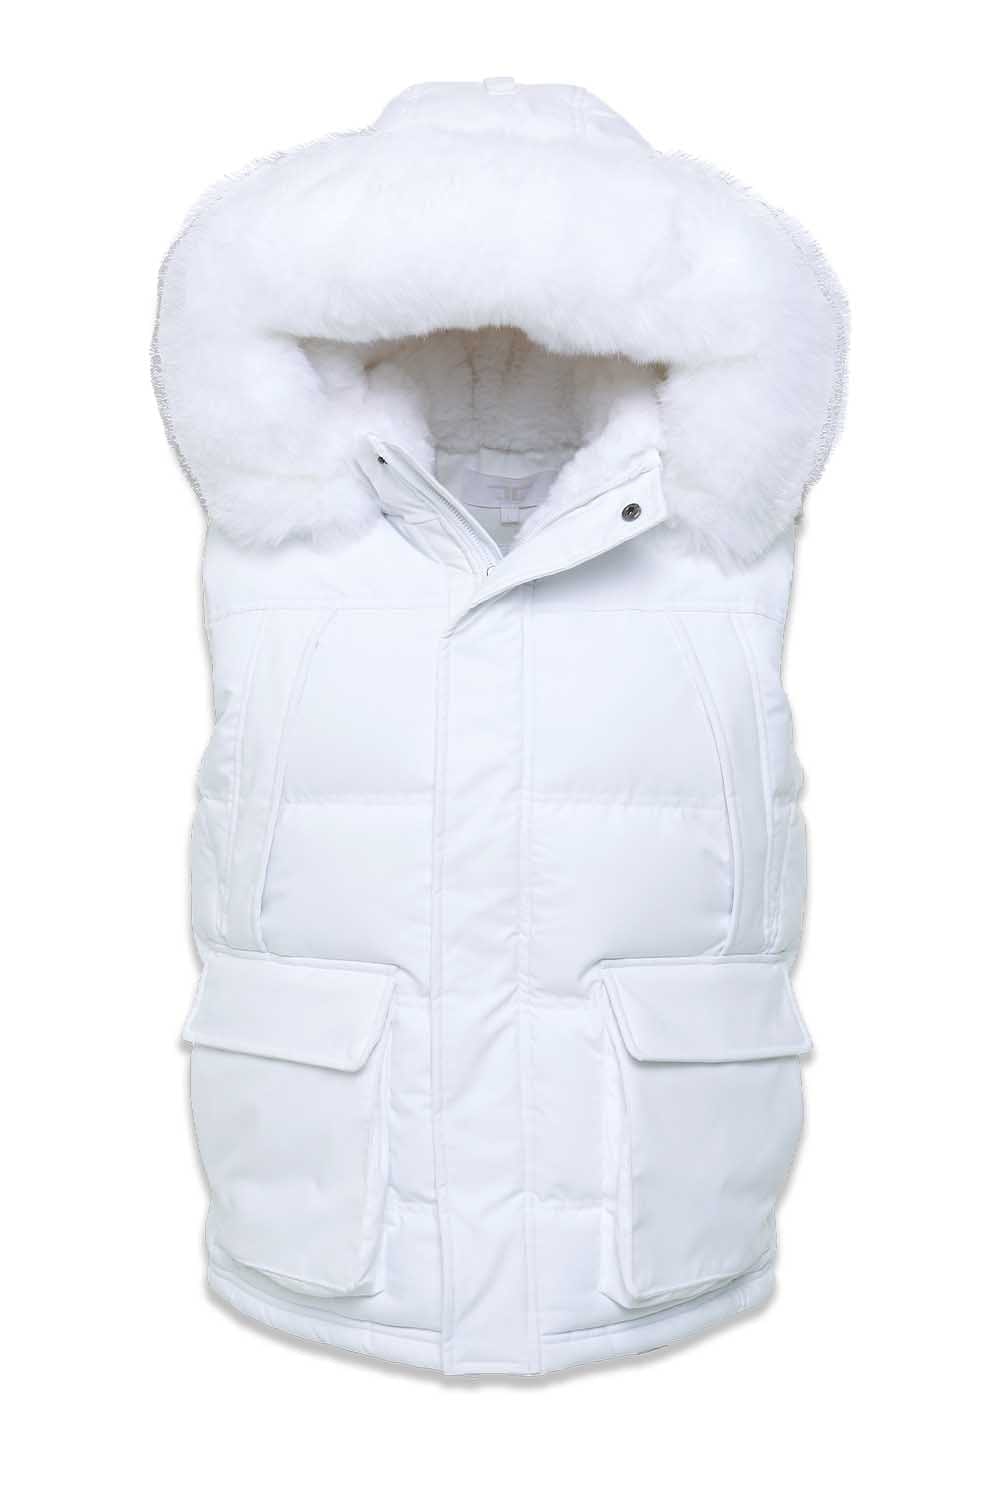 Jordan Craig Yukon Fur Lined Puffer Vest (White) S / White